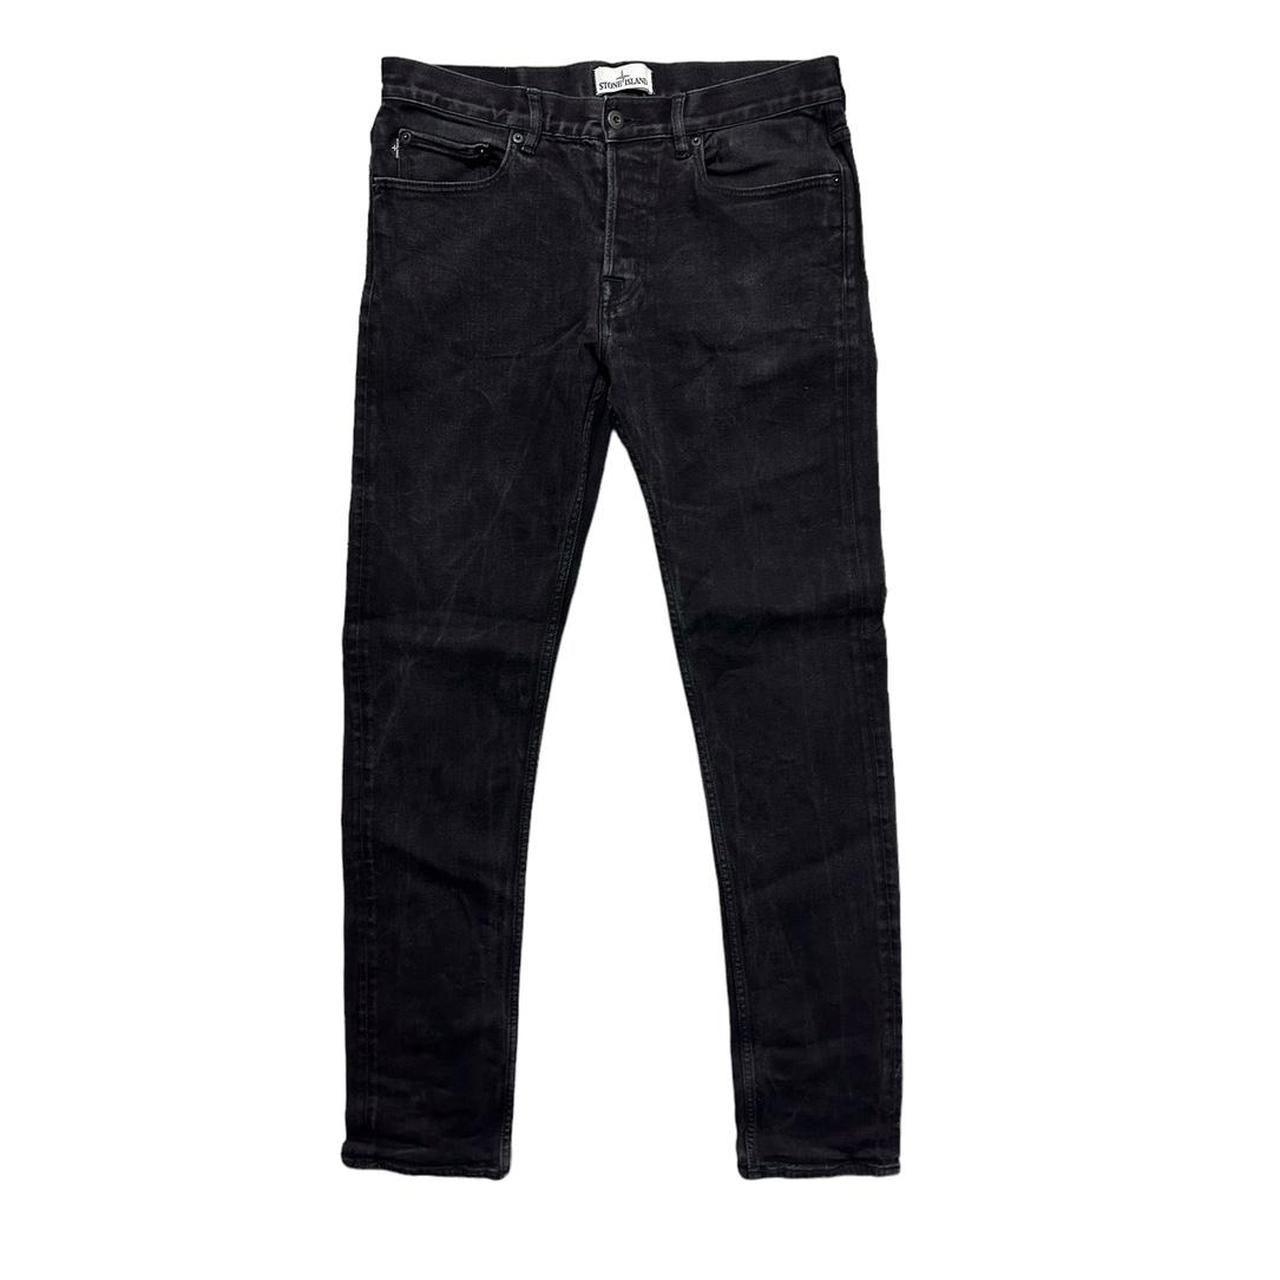 Stone Island Skinny Black Denim Jeans - Known Source